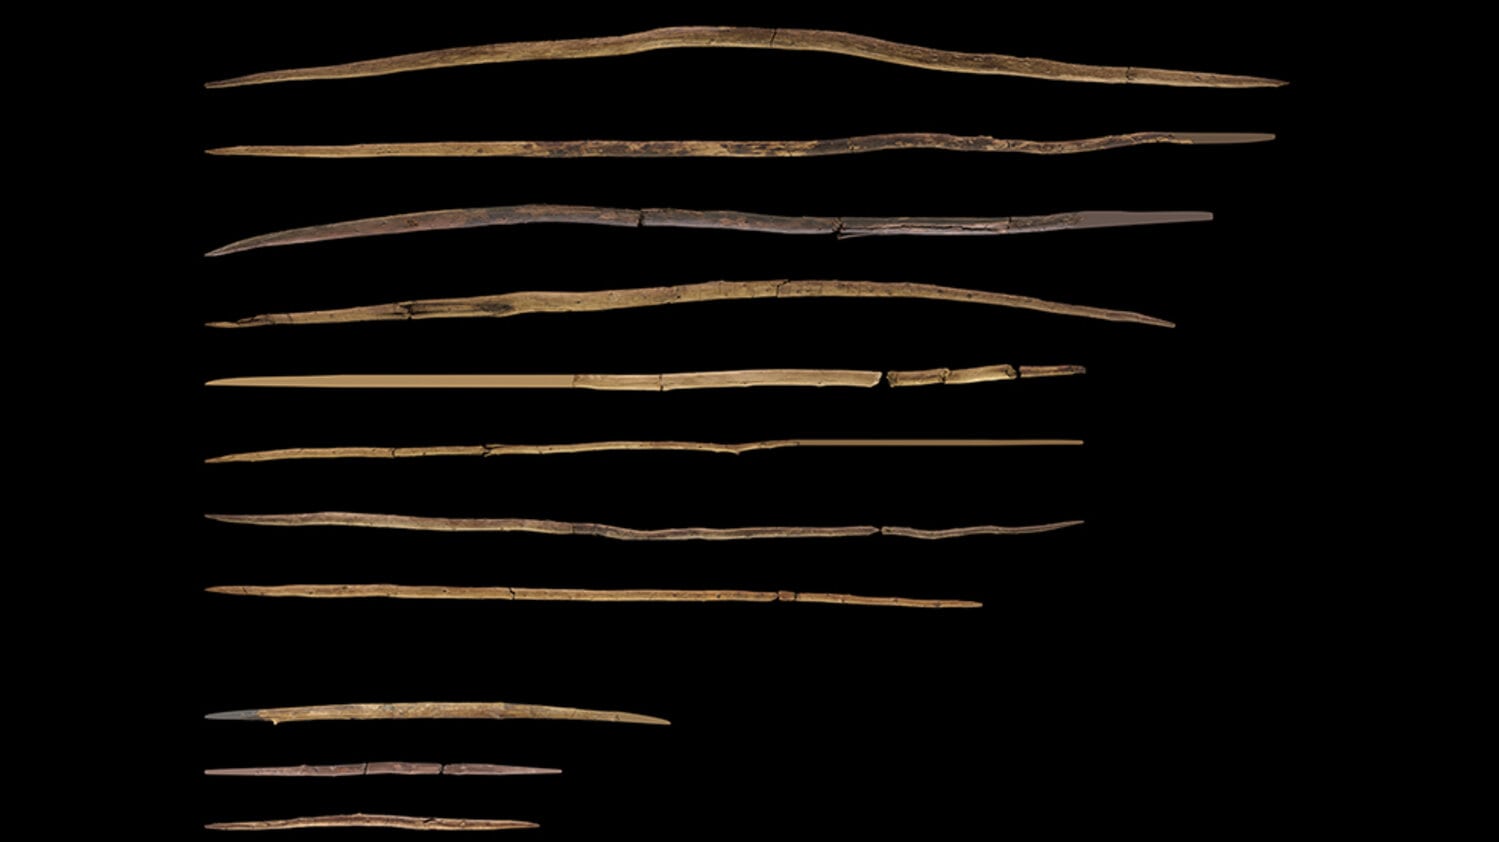 300 ezer éves faeszközök árulkodnak az emberelődök technológiai fejlettségéről